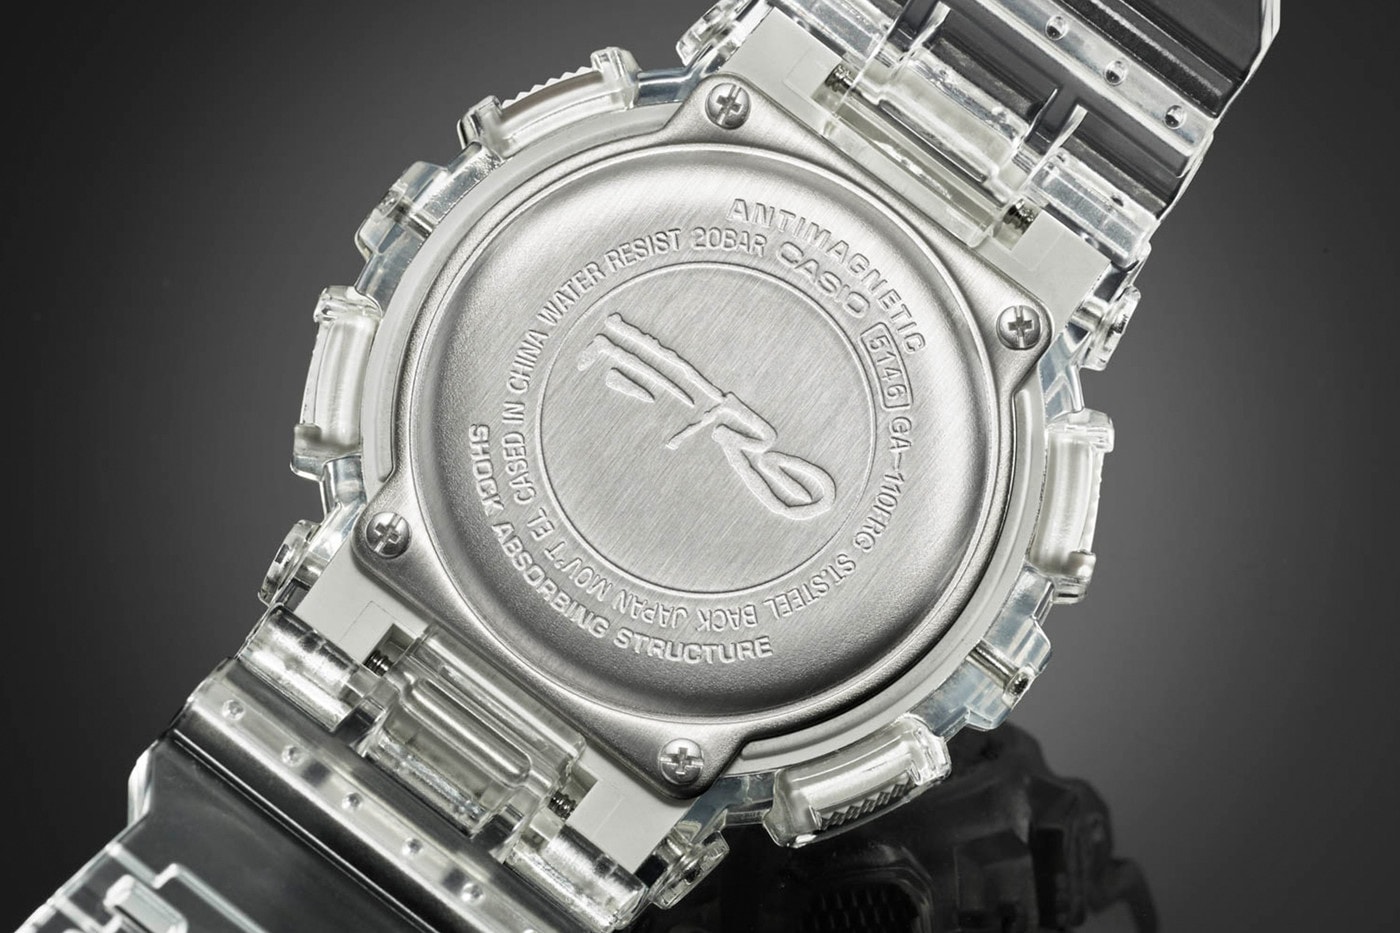 에이셉 퍼그와 지샥이 공동 제작한 투명 시계 ‘GA-110’ 